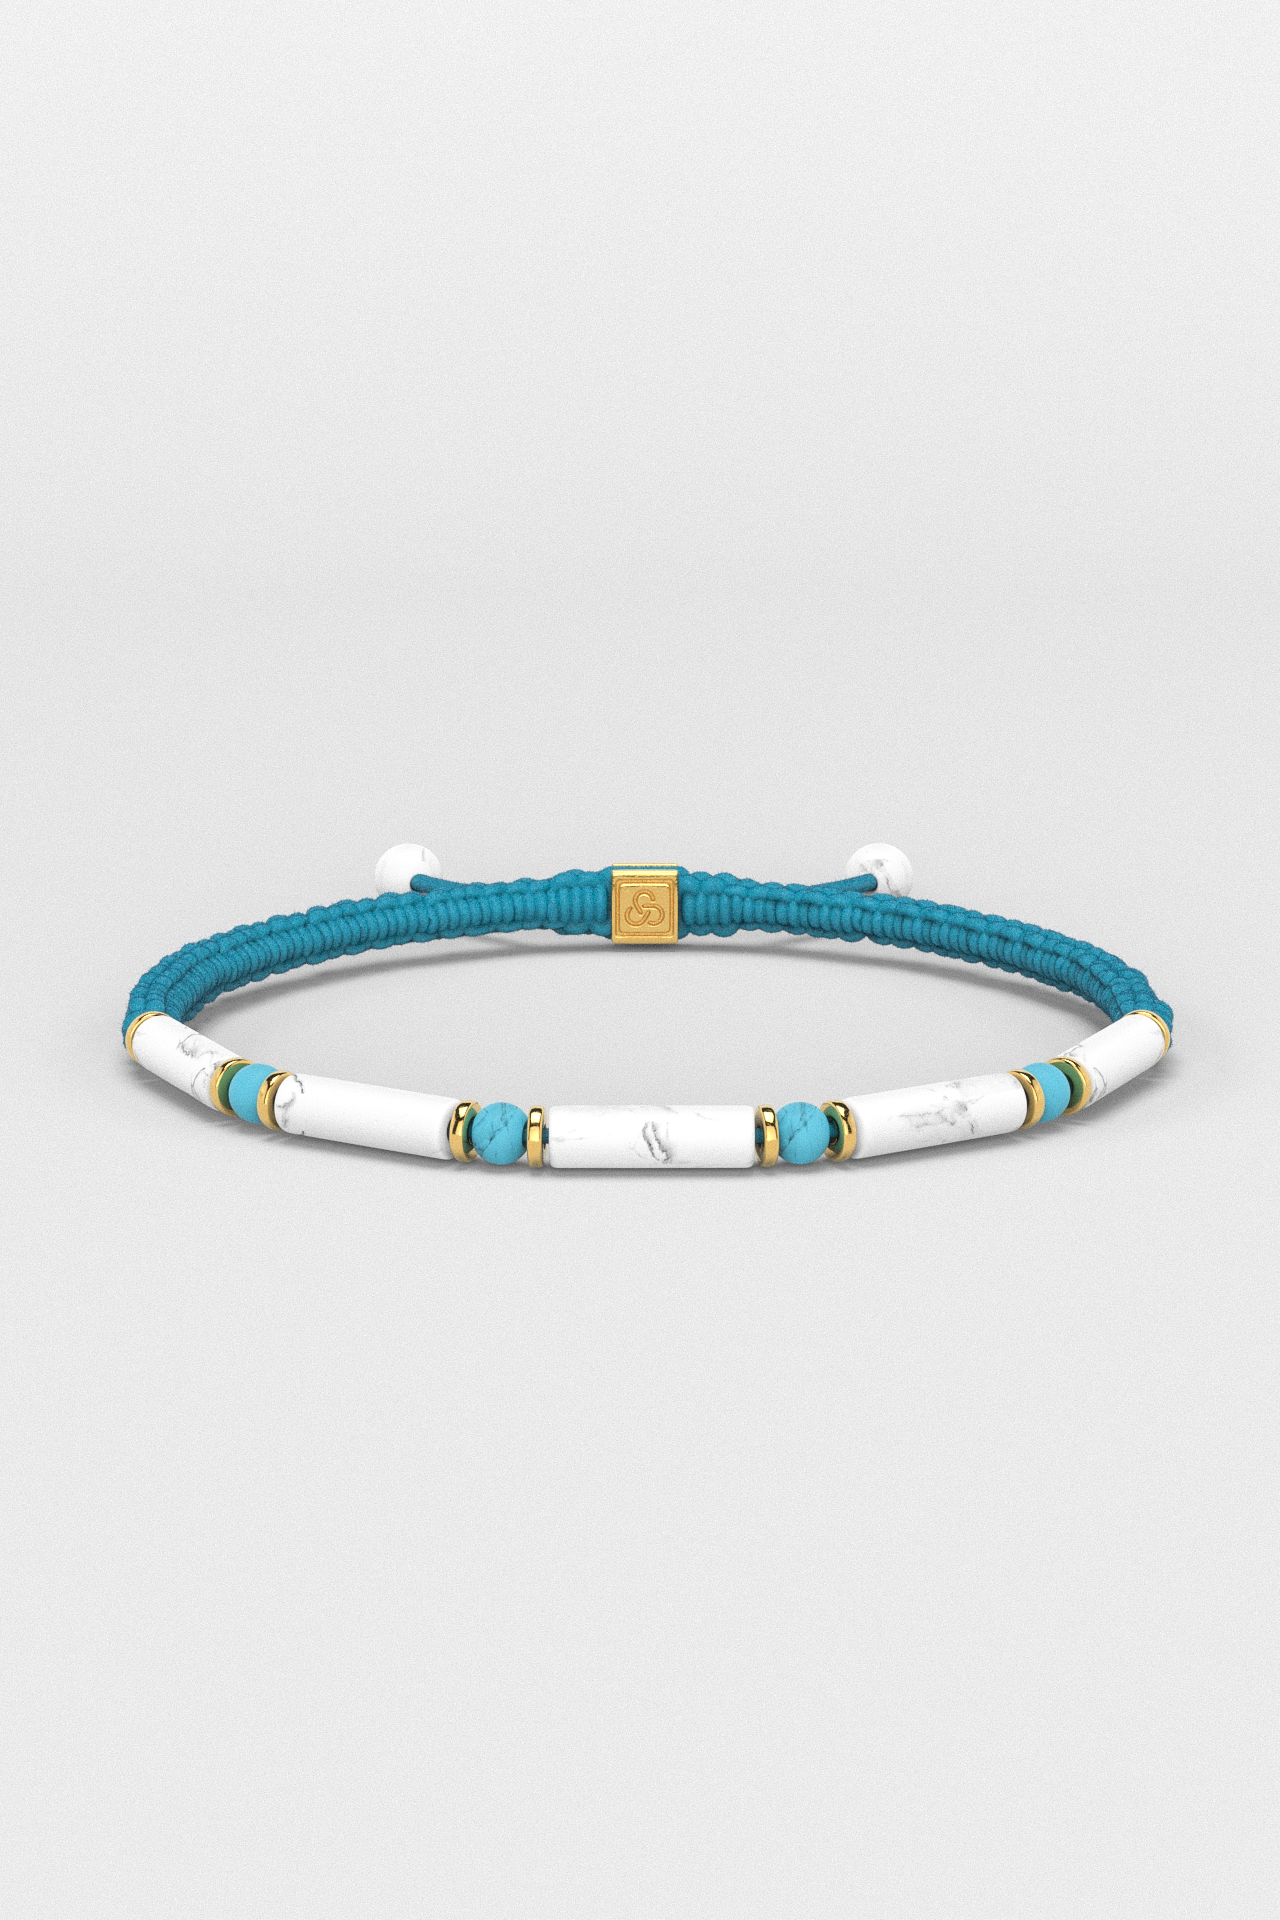 Howlite + Turquoise Bracelet 4mm | VITA